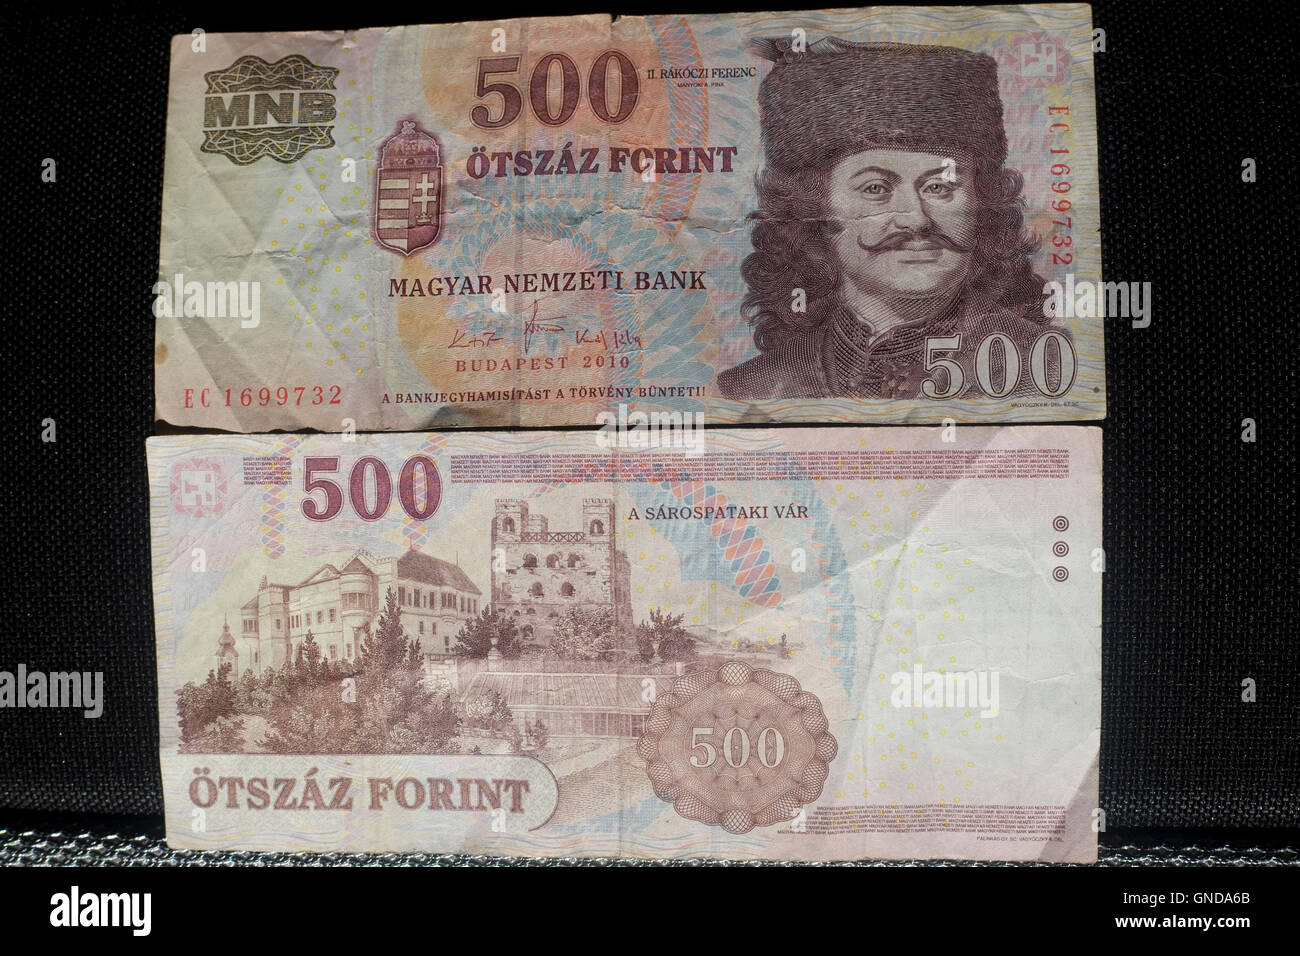 500 Otszaz forint в рублях. 100 Форинт информация 1996 сведения.